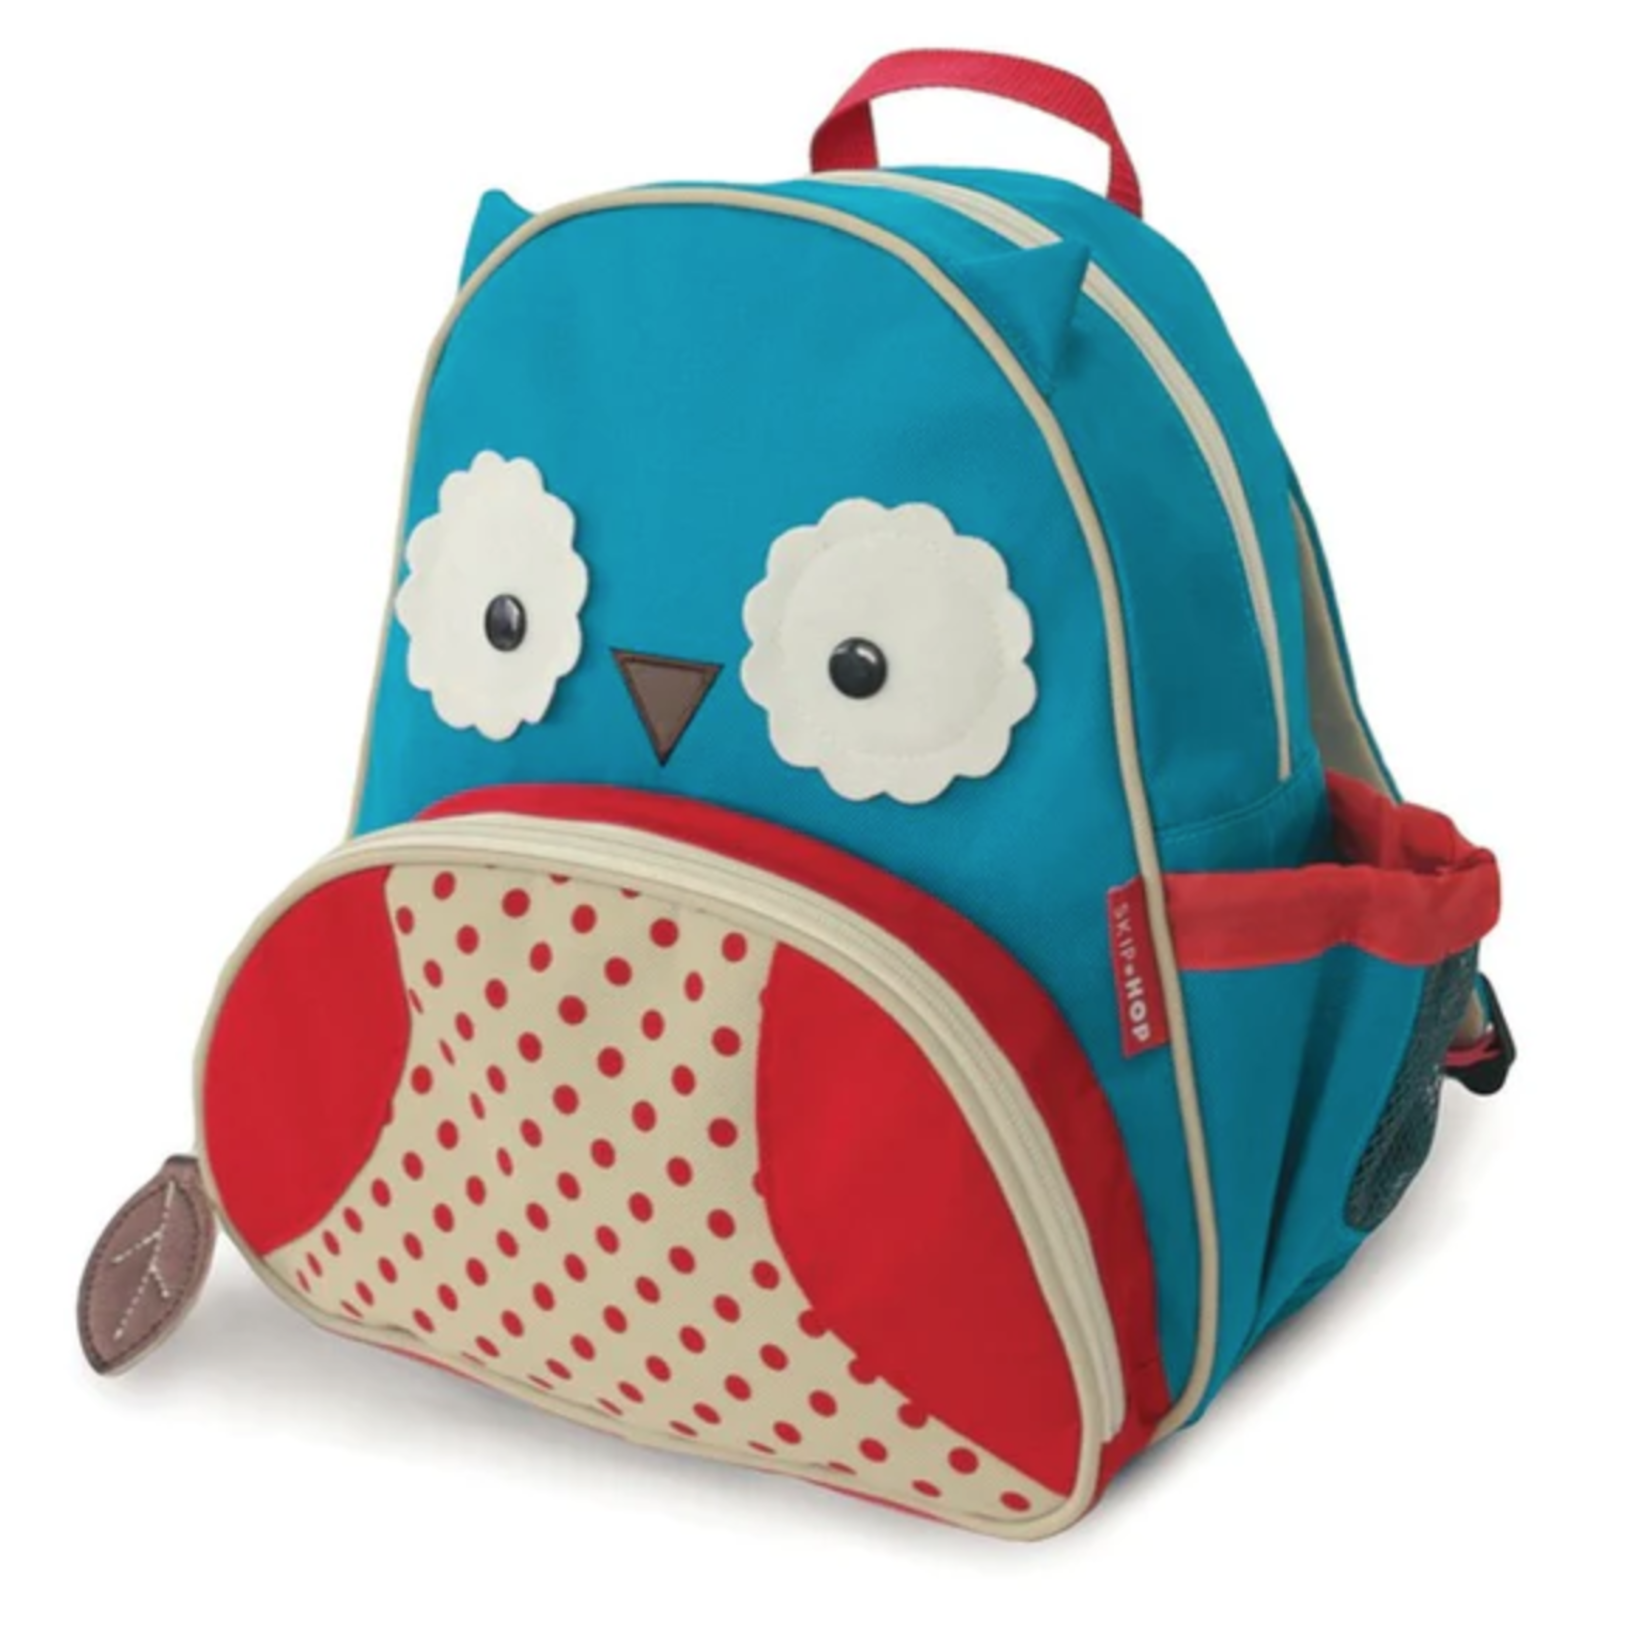 Skip Hop Zoo Little Kid Backpack-Owl